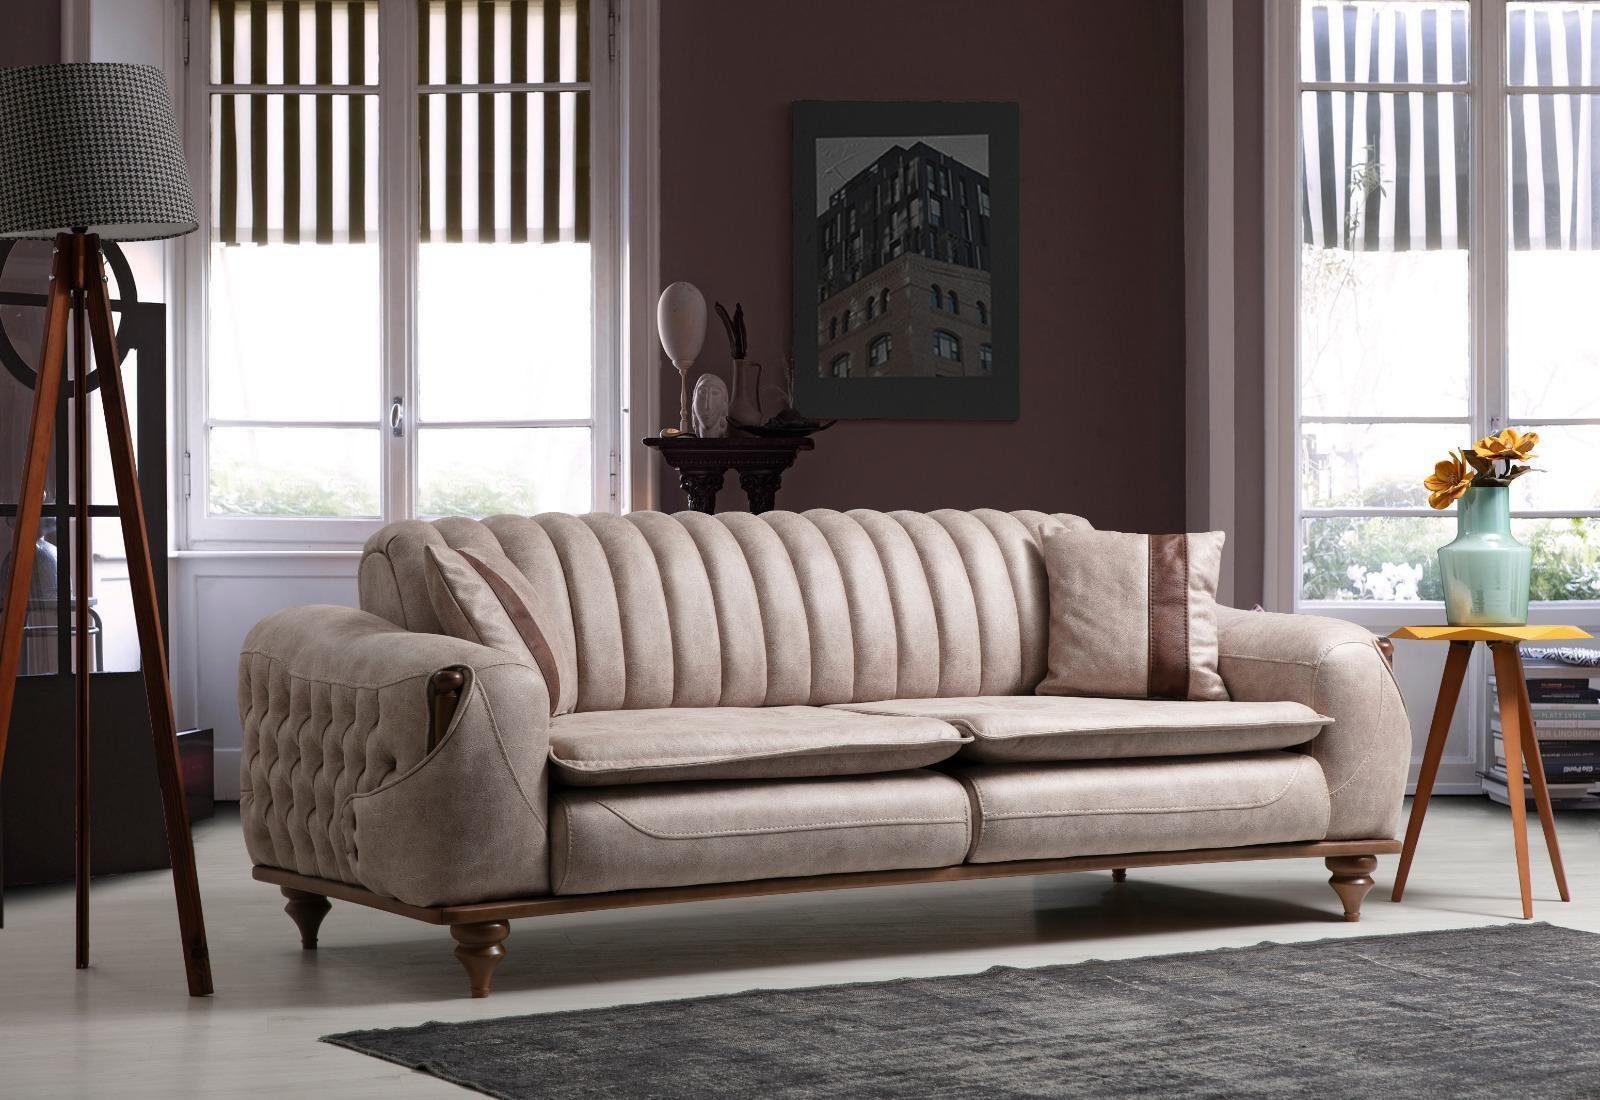 JVmoebel Chesterfield-Sofa Beige Dreisitzer Chesterfield Couch Polster Möbel | Chesterfield-Sofas